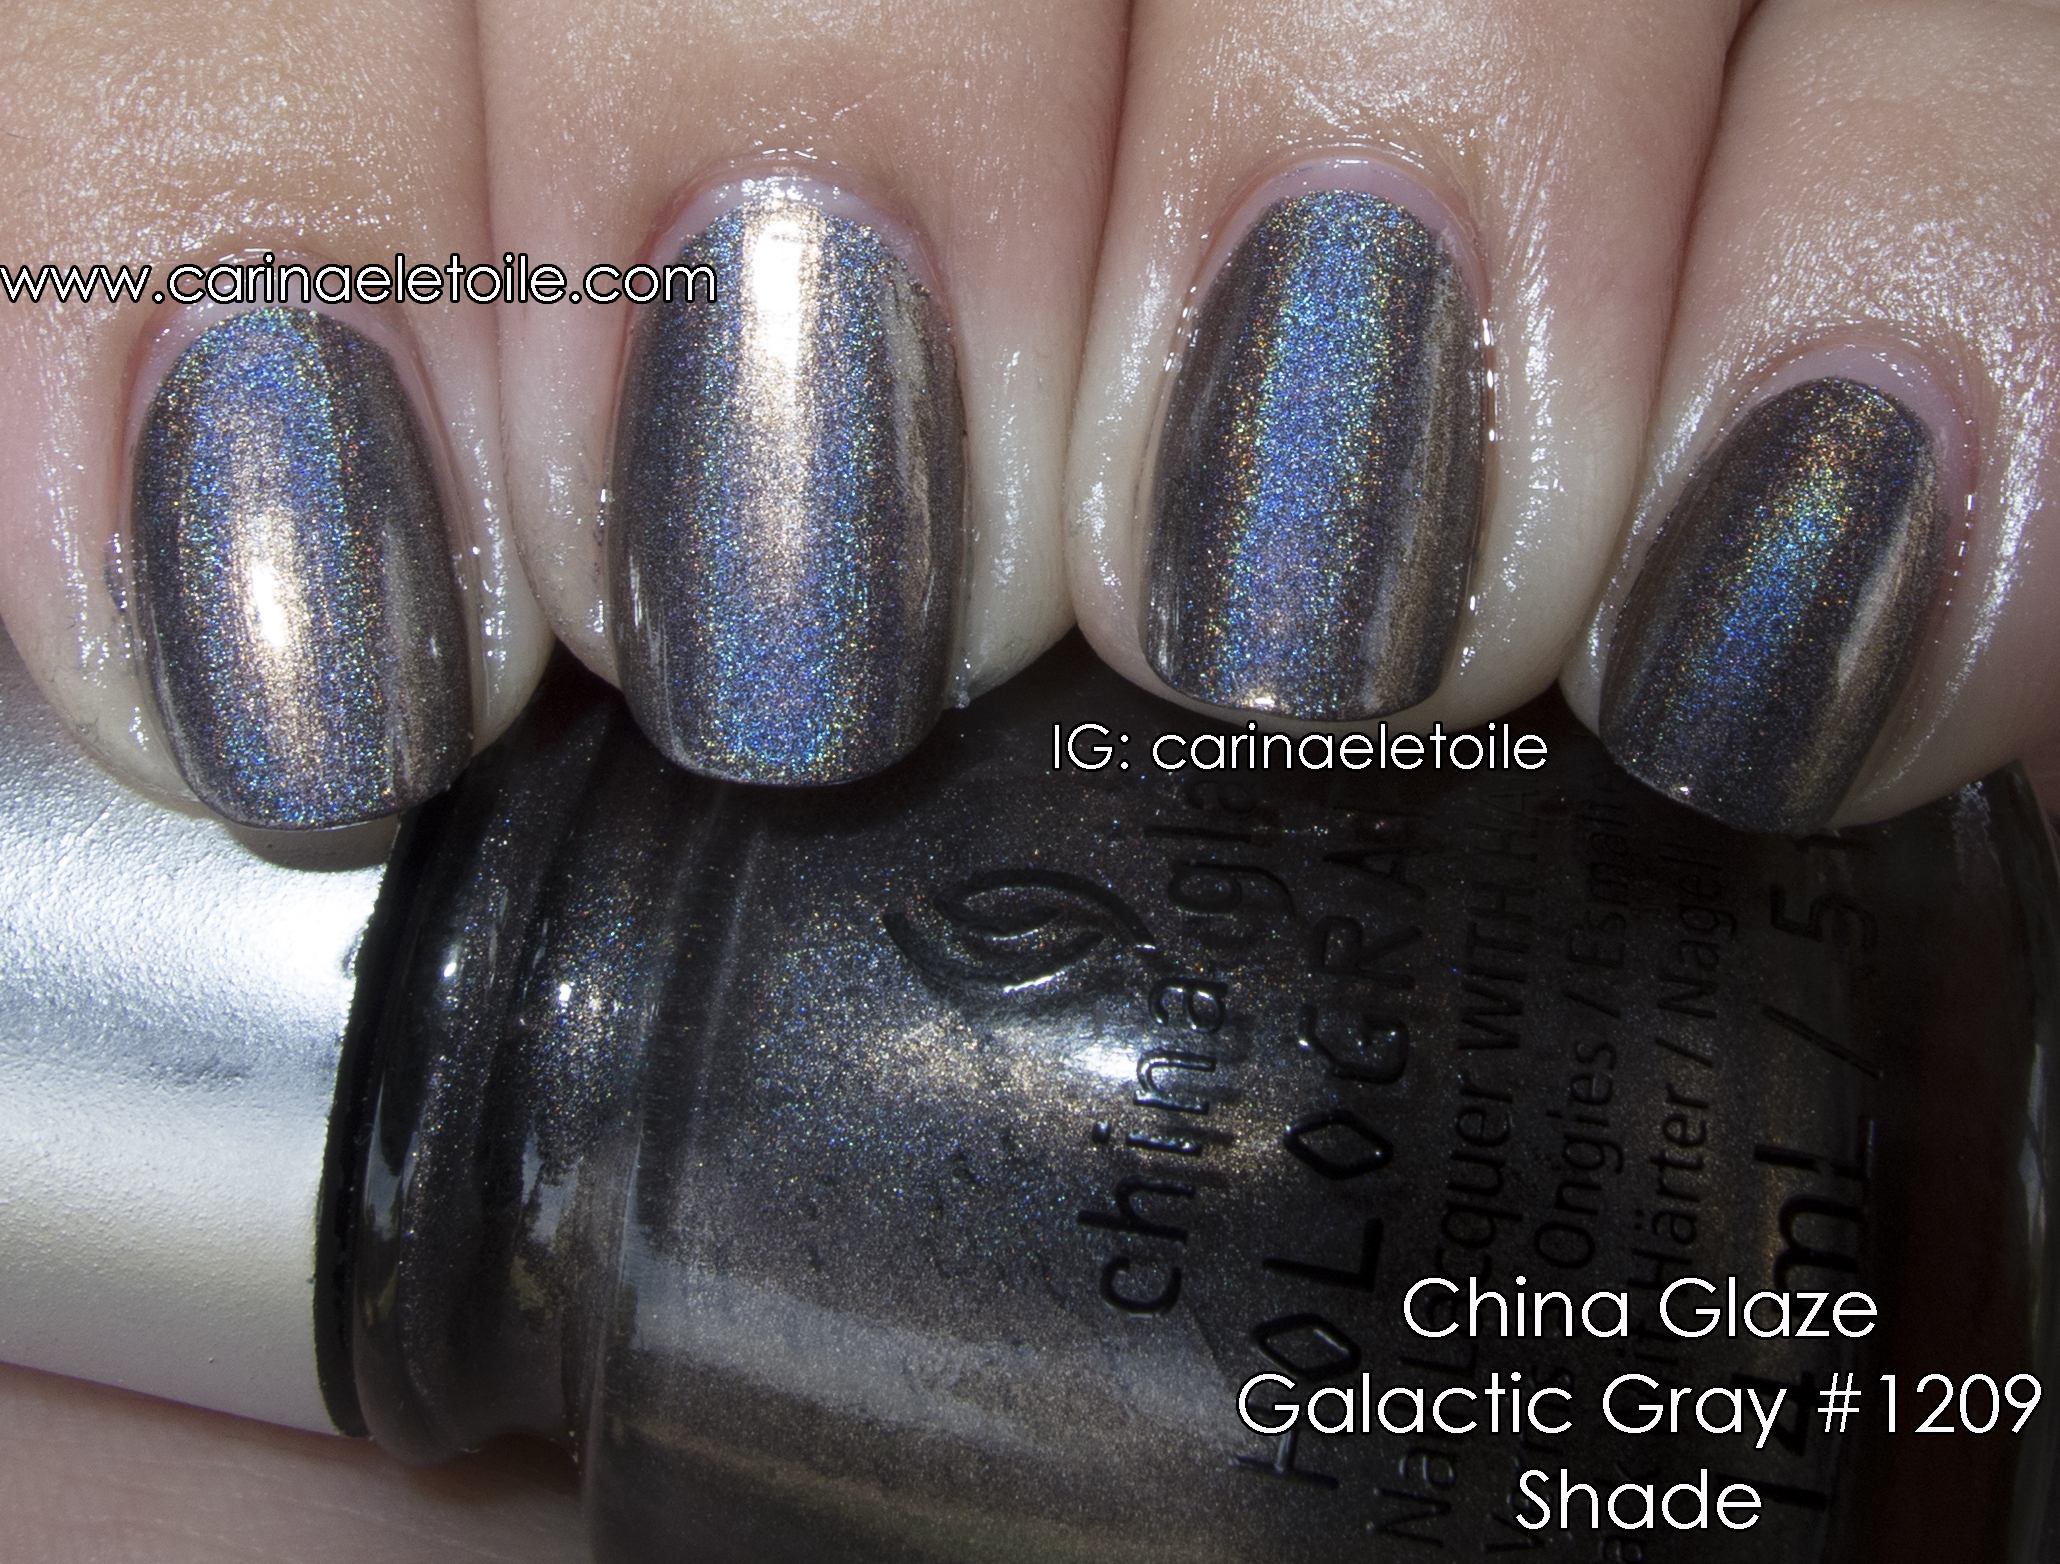 China Glaze Galactic Gray